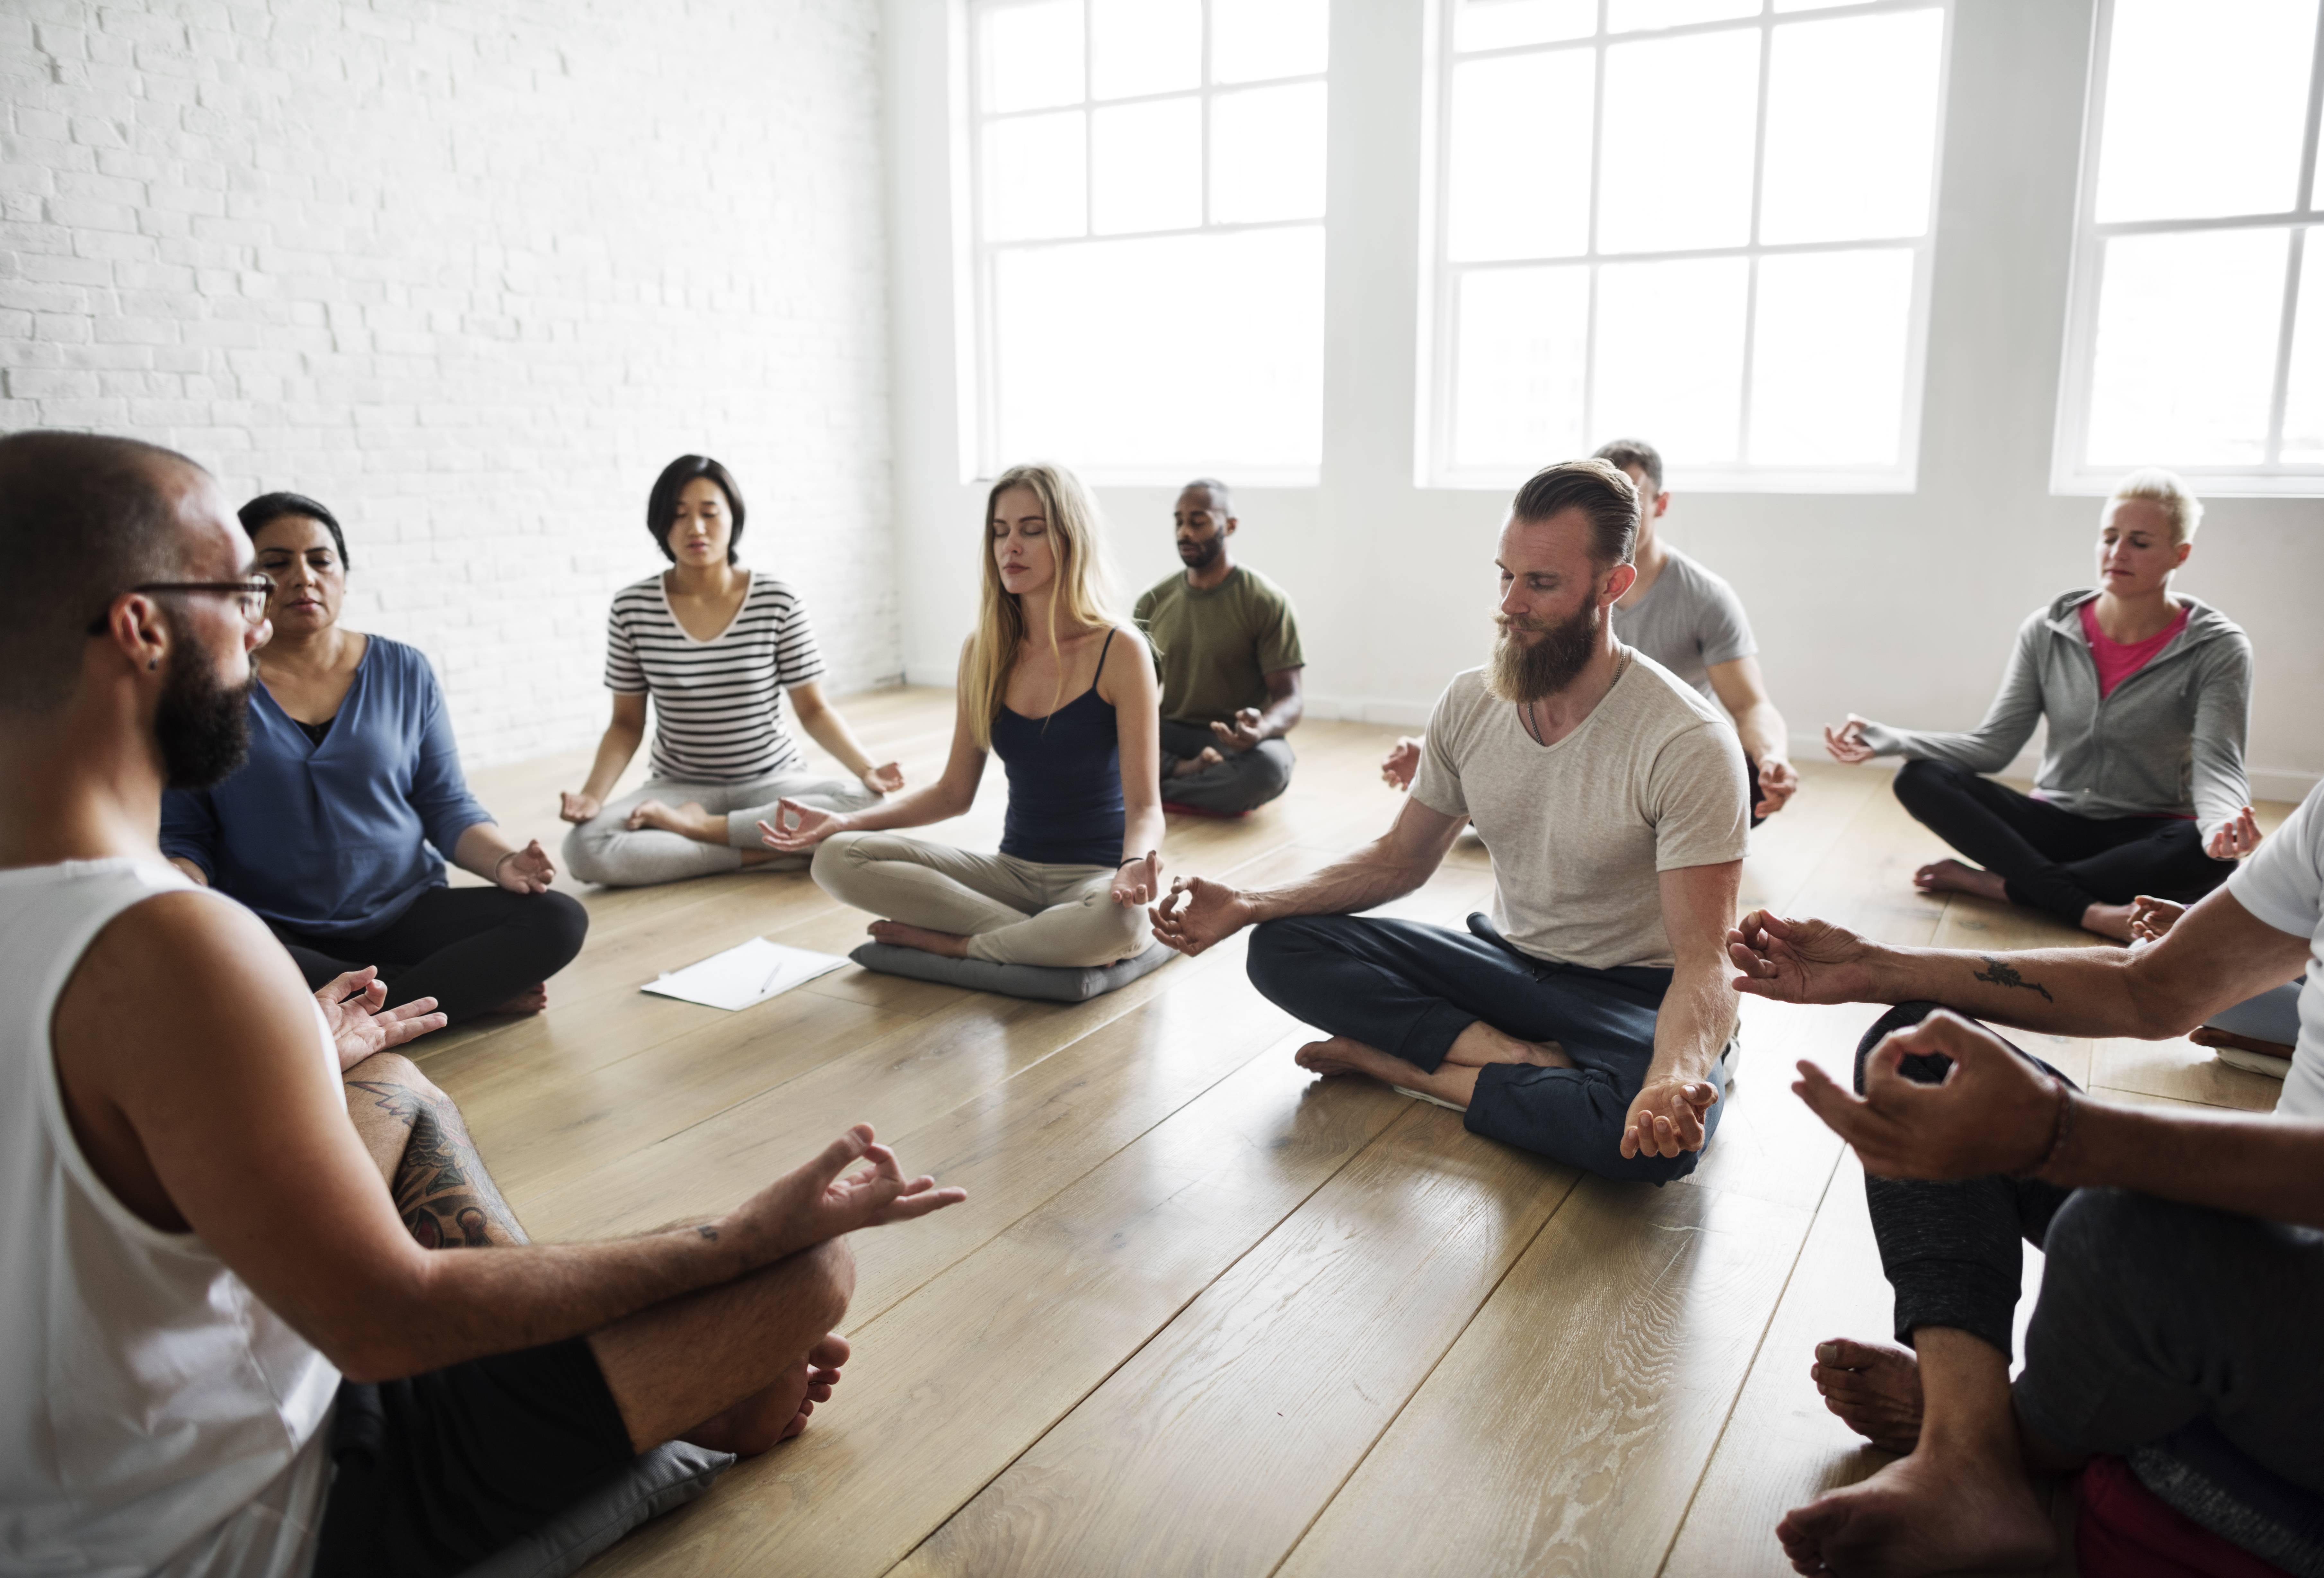 Игра медитация. Групповая медитация. Медитация группа людей. Группа людей медитируют. Коллективная медитация.